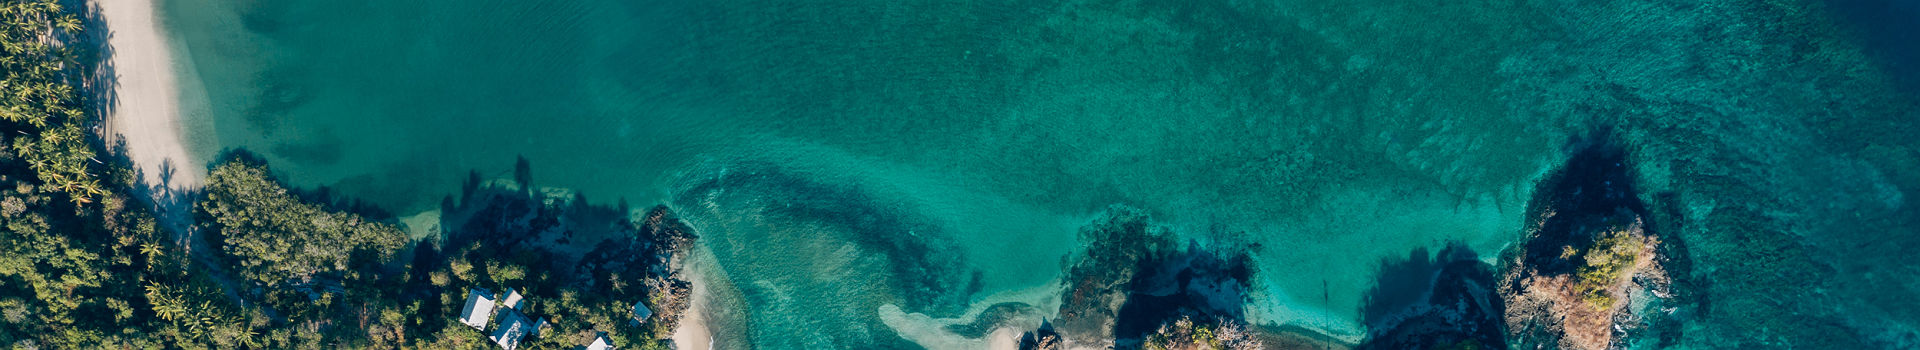 Islas Secas, vue de drone